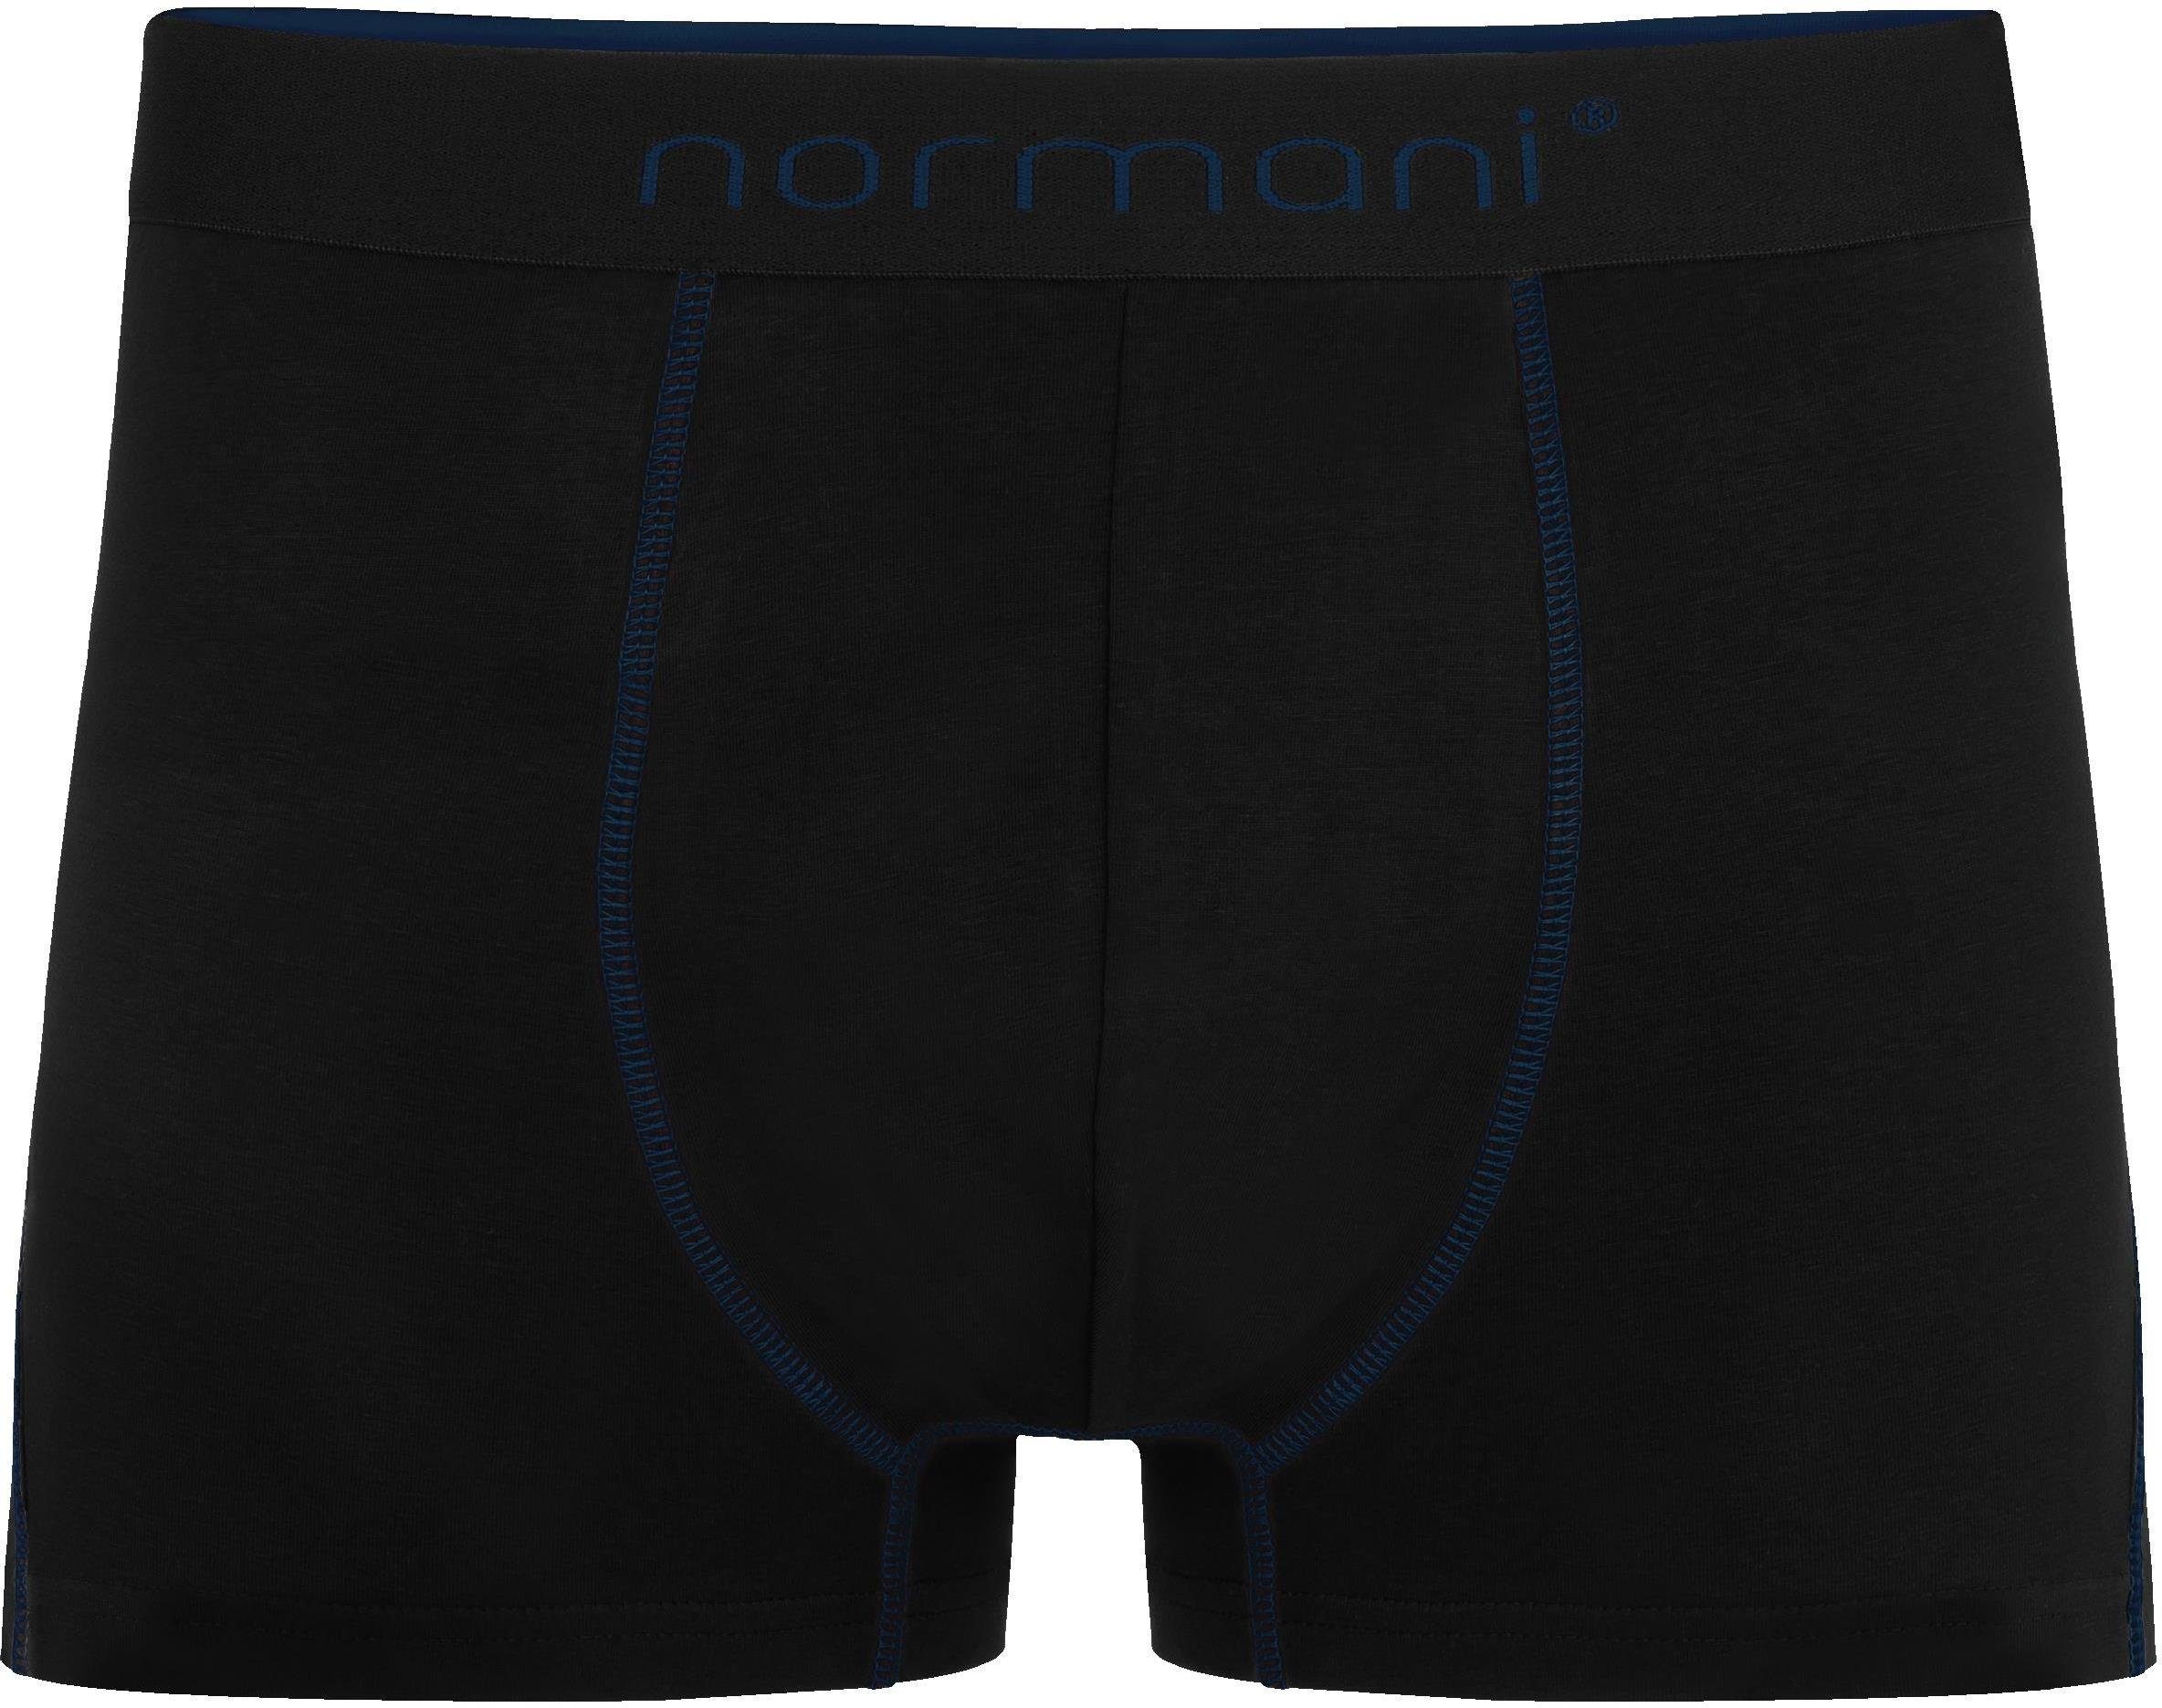 atmungsaktiver Boxershorts Dunkelblau/Hellblau/Türkis Baumwoll-Boxershorts normani Männer 6x Baumwolle Unterhose aus für Herren